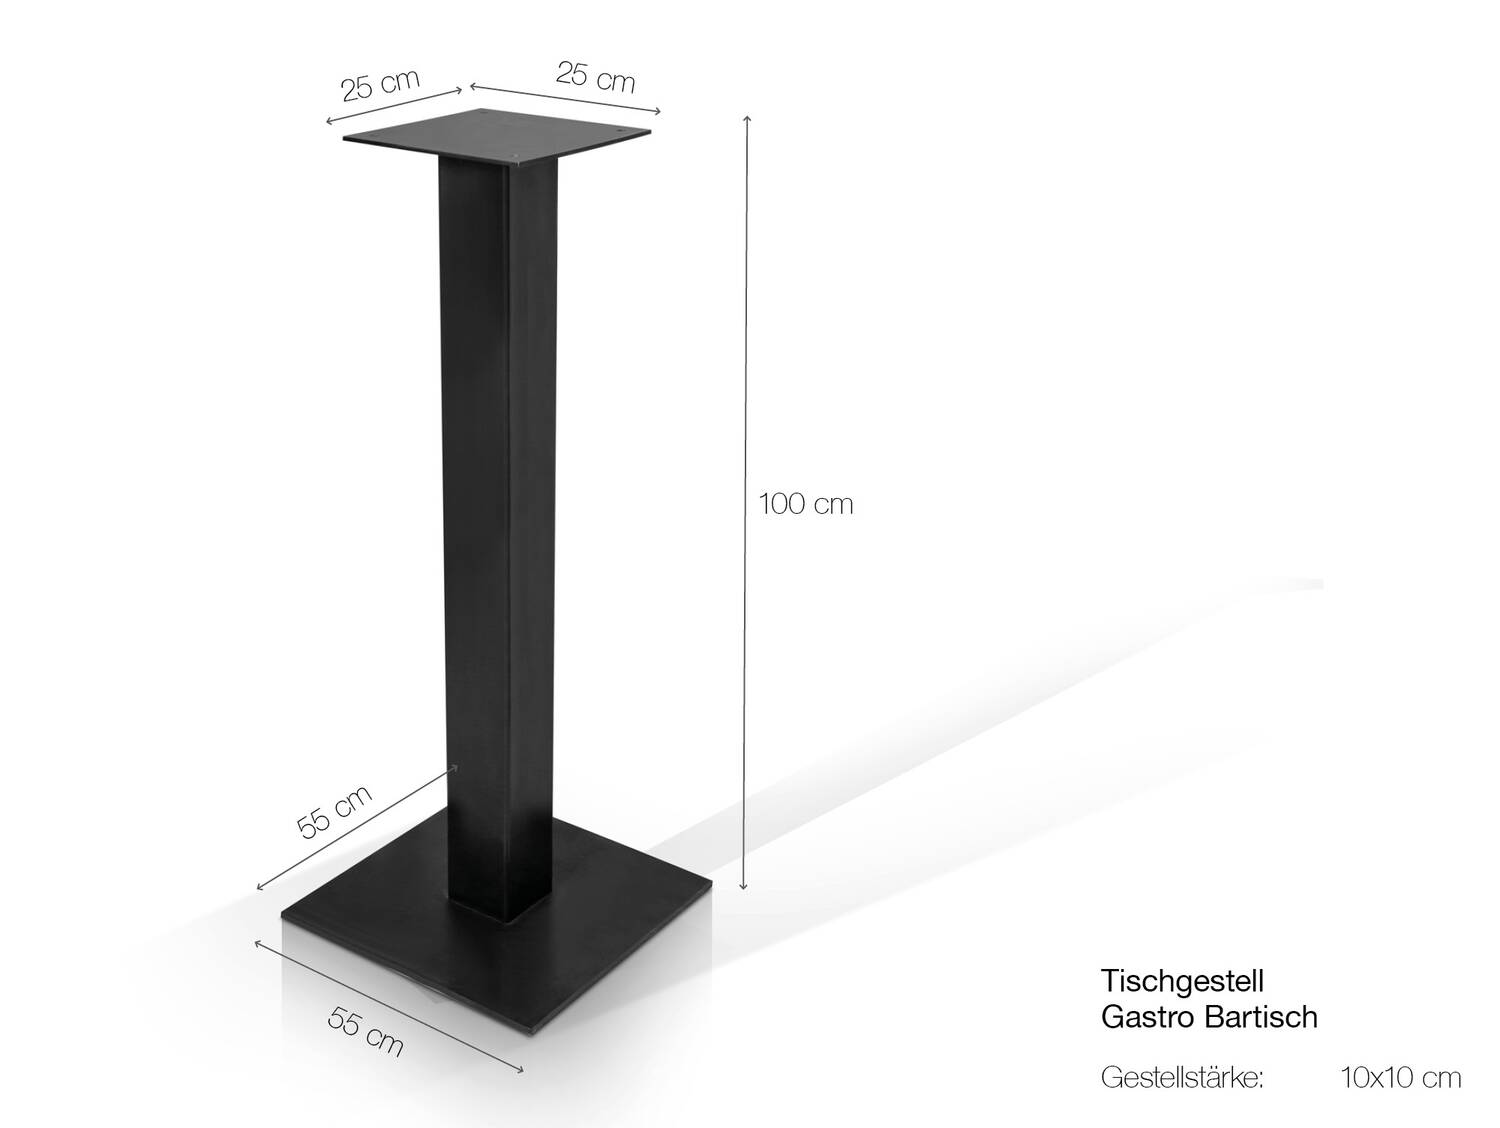 Tischgestell für GASTRO Bartisch, Material schwarz